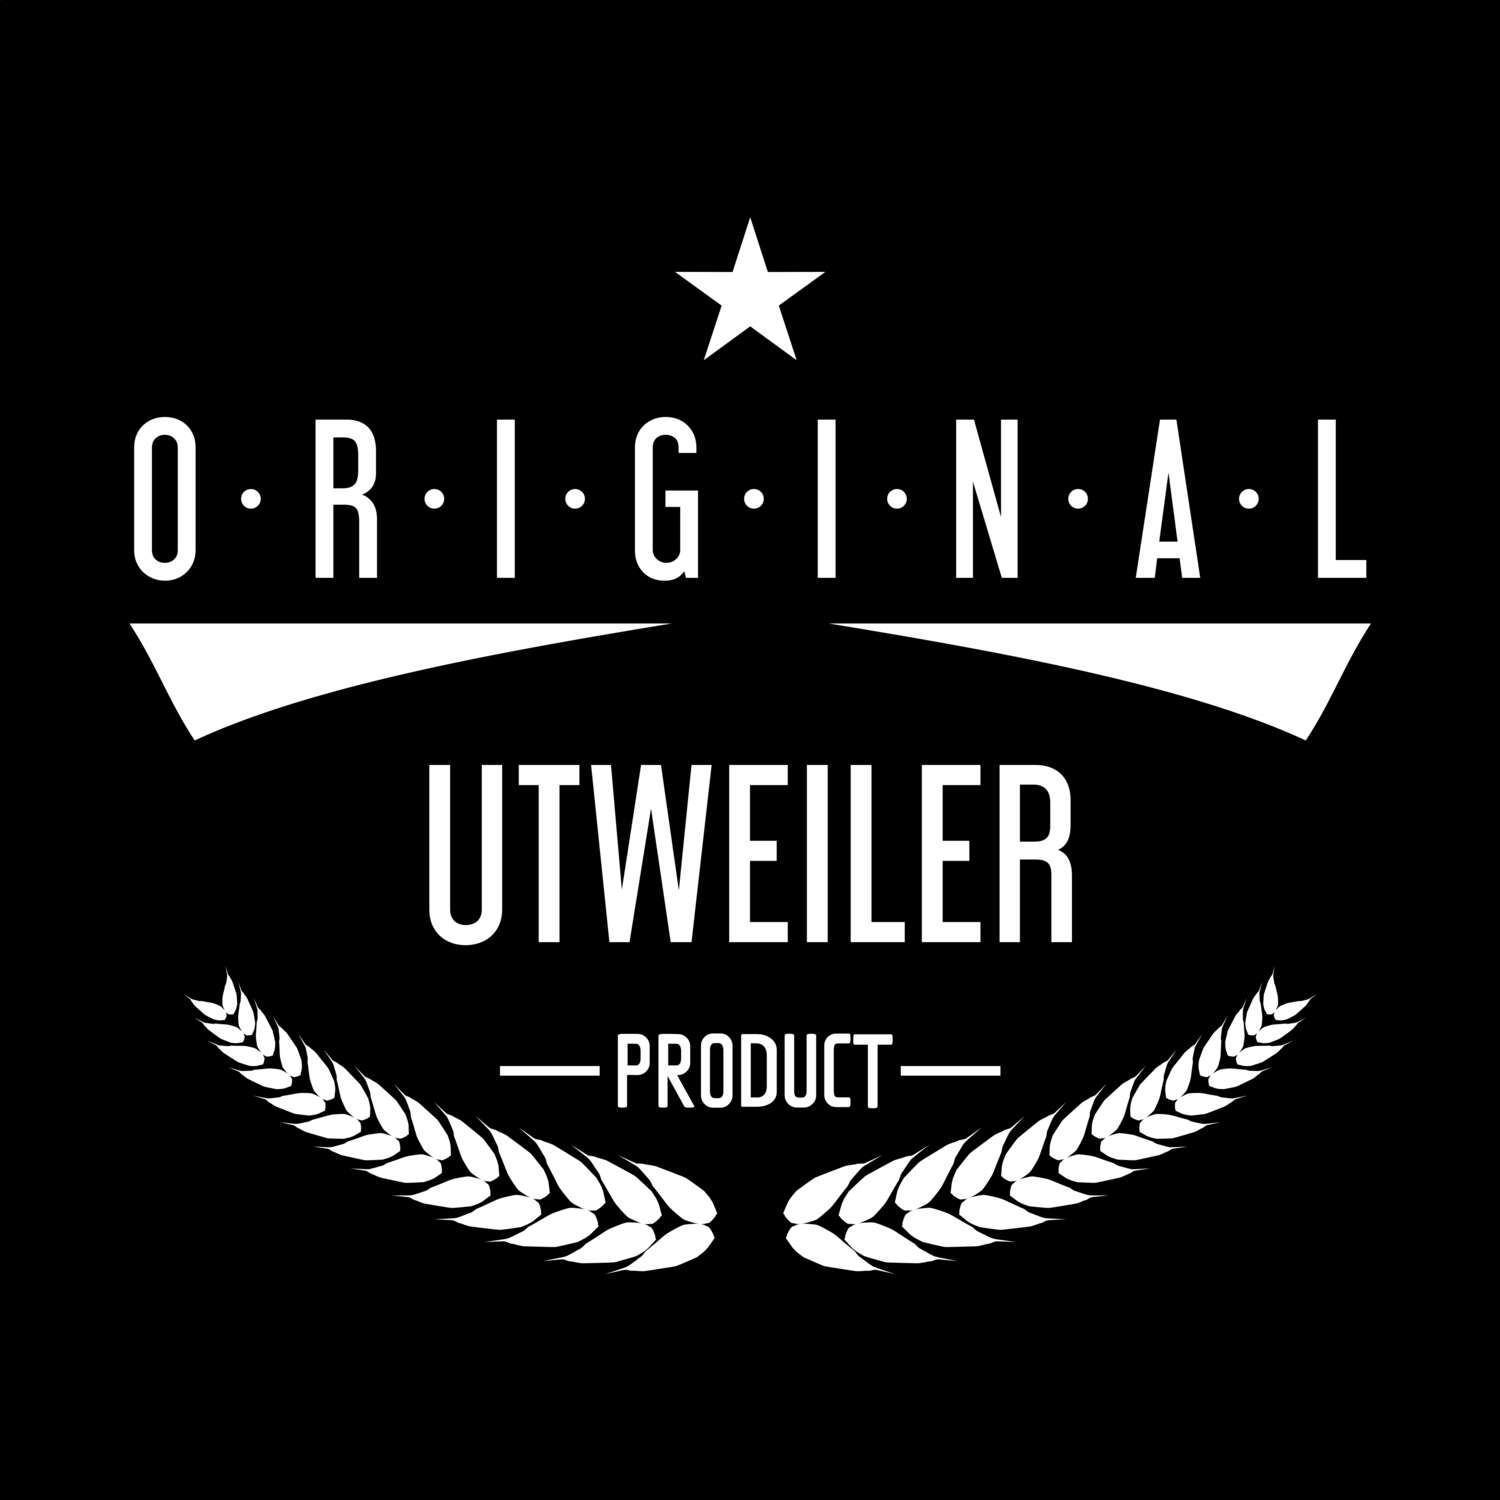 Utweiler T-Shirt »Original Product«